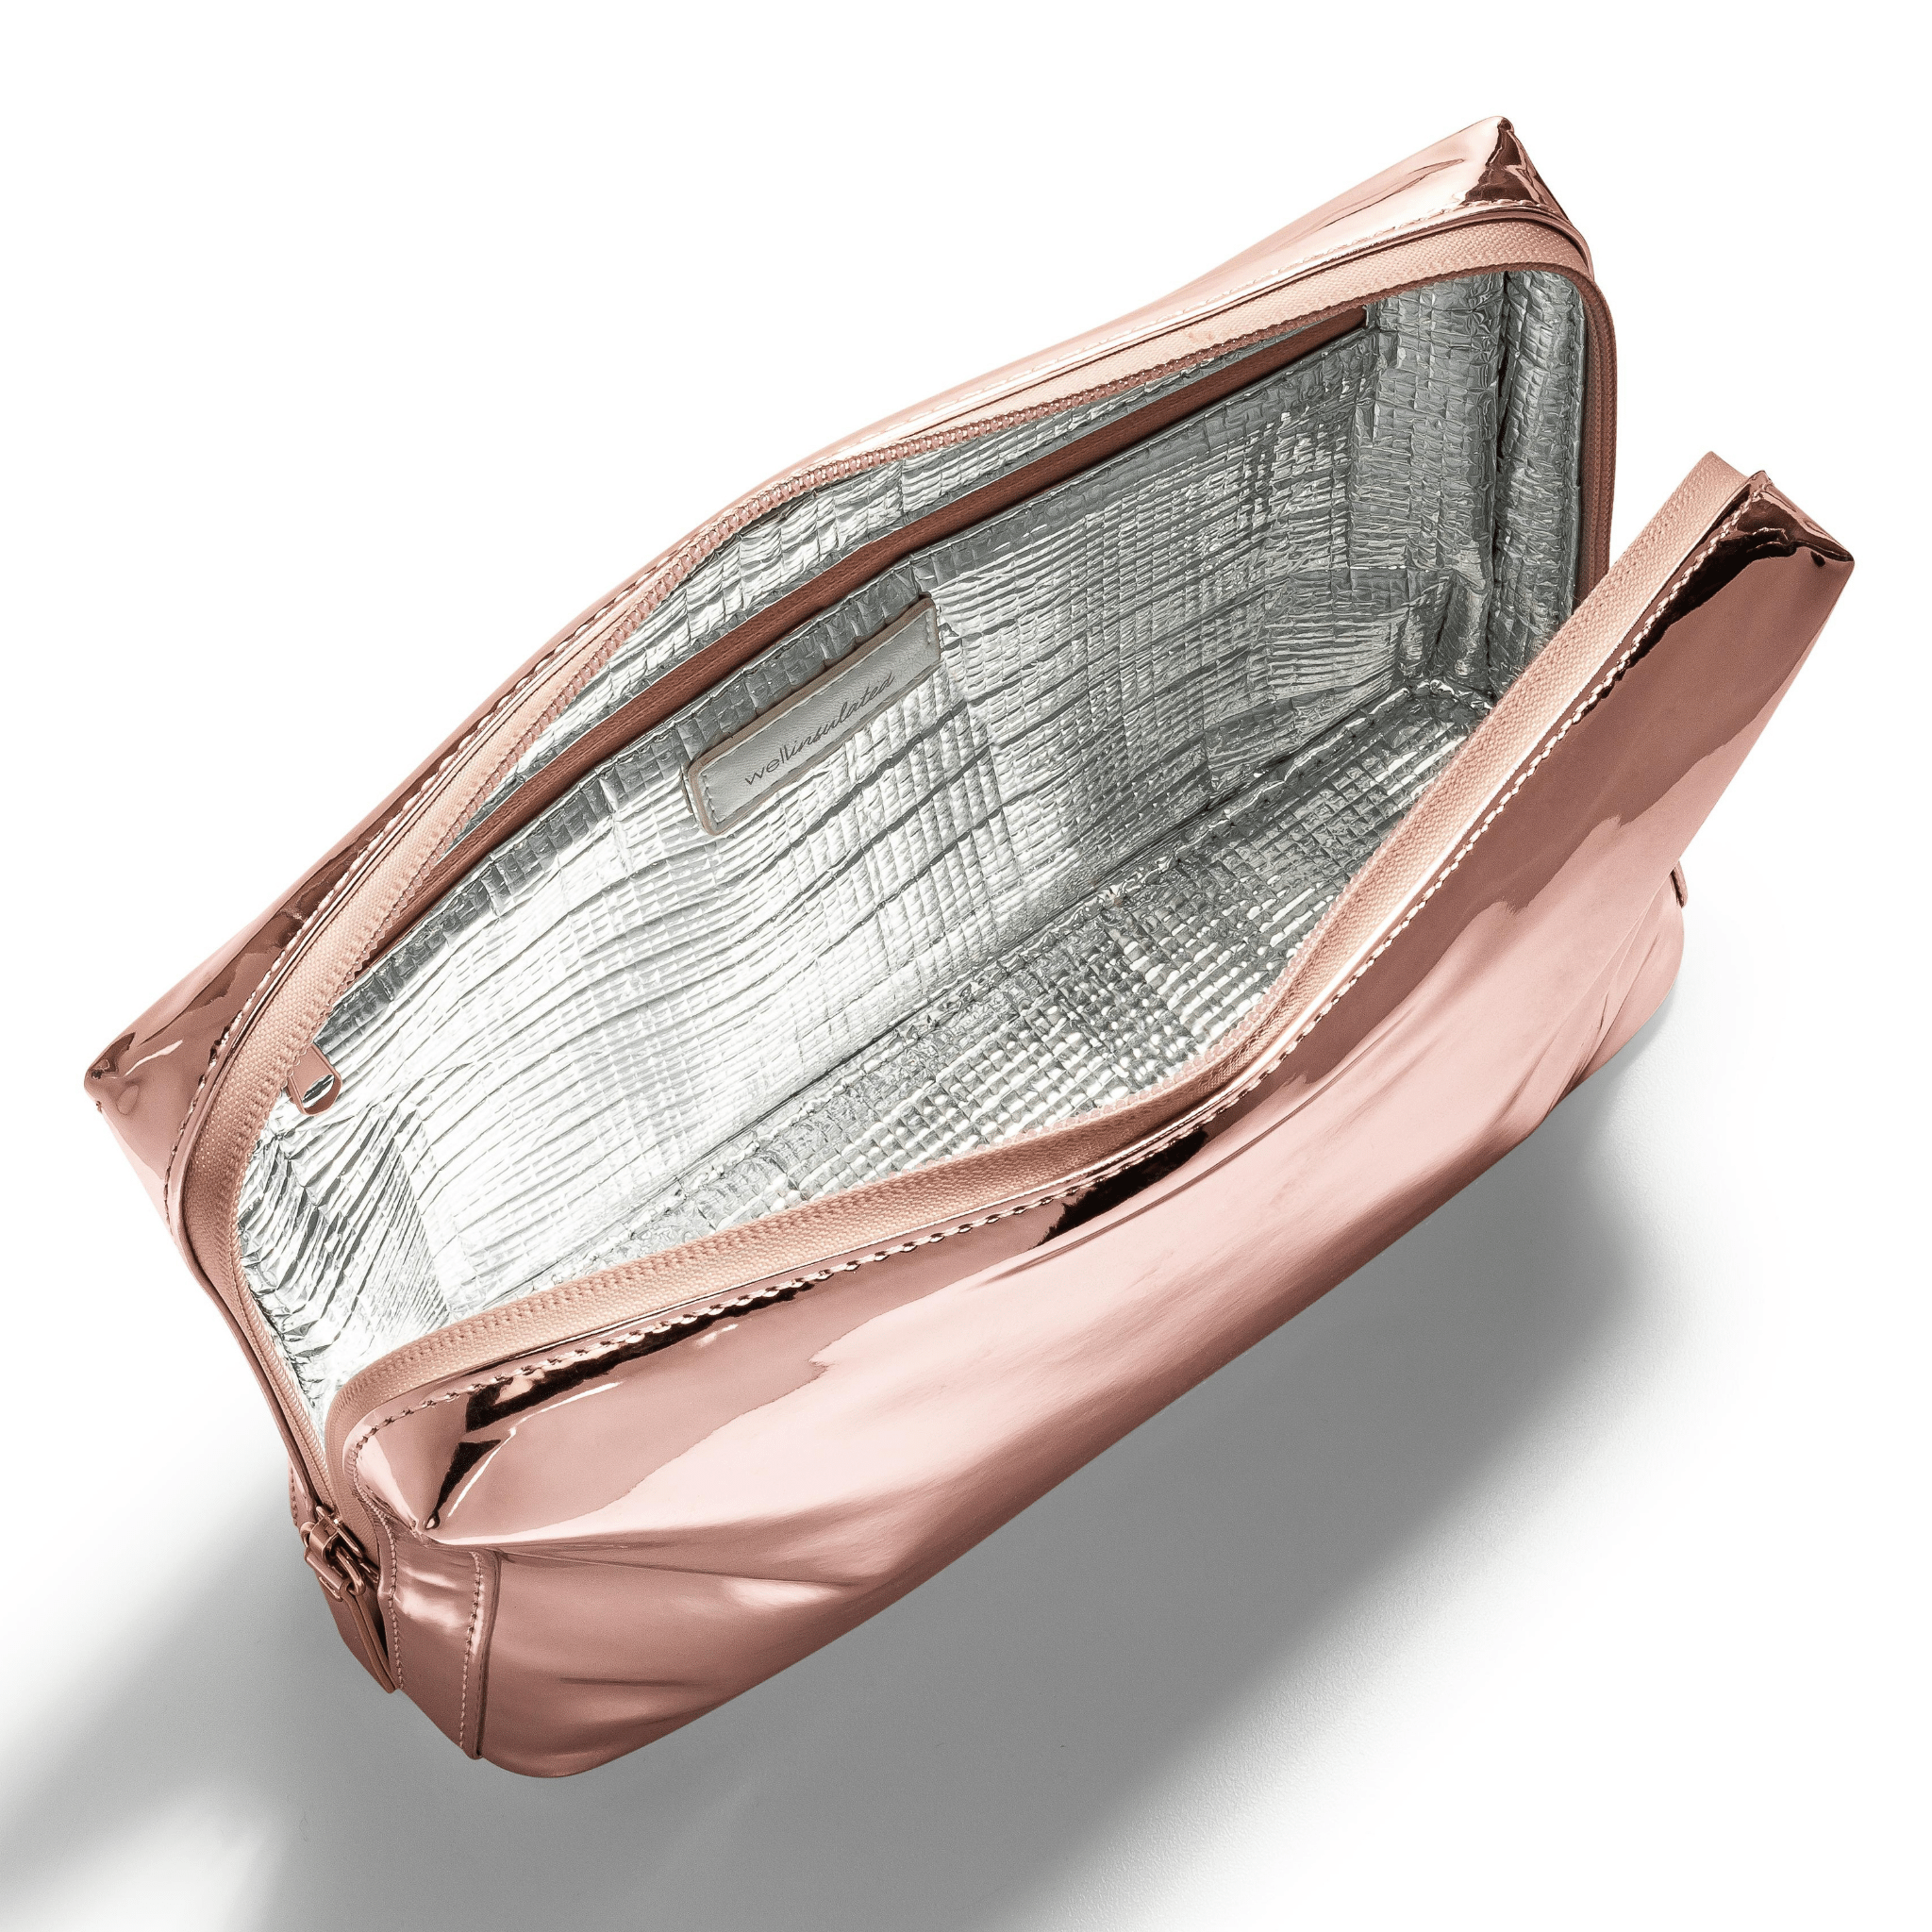 Anatomy Jewelry Bag - E-SHOP - Ready-to-Wear | Maison Schiaparelli